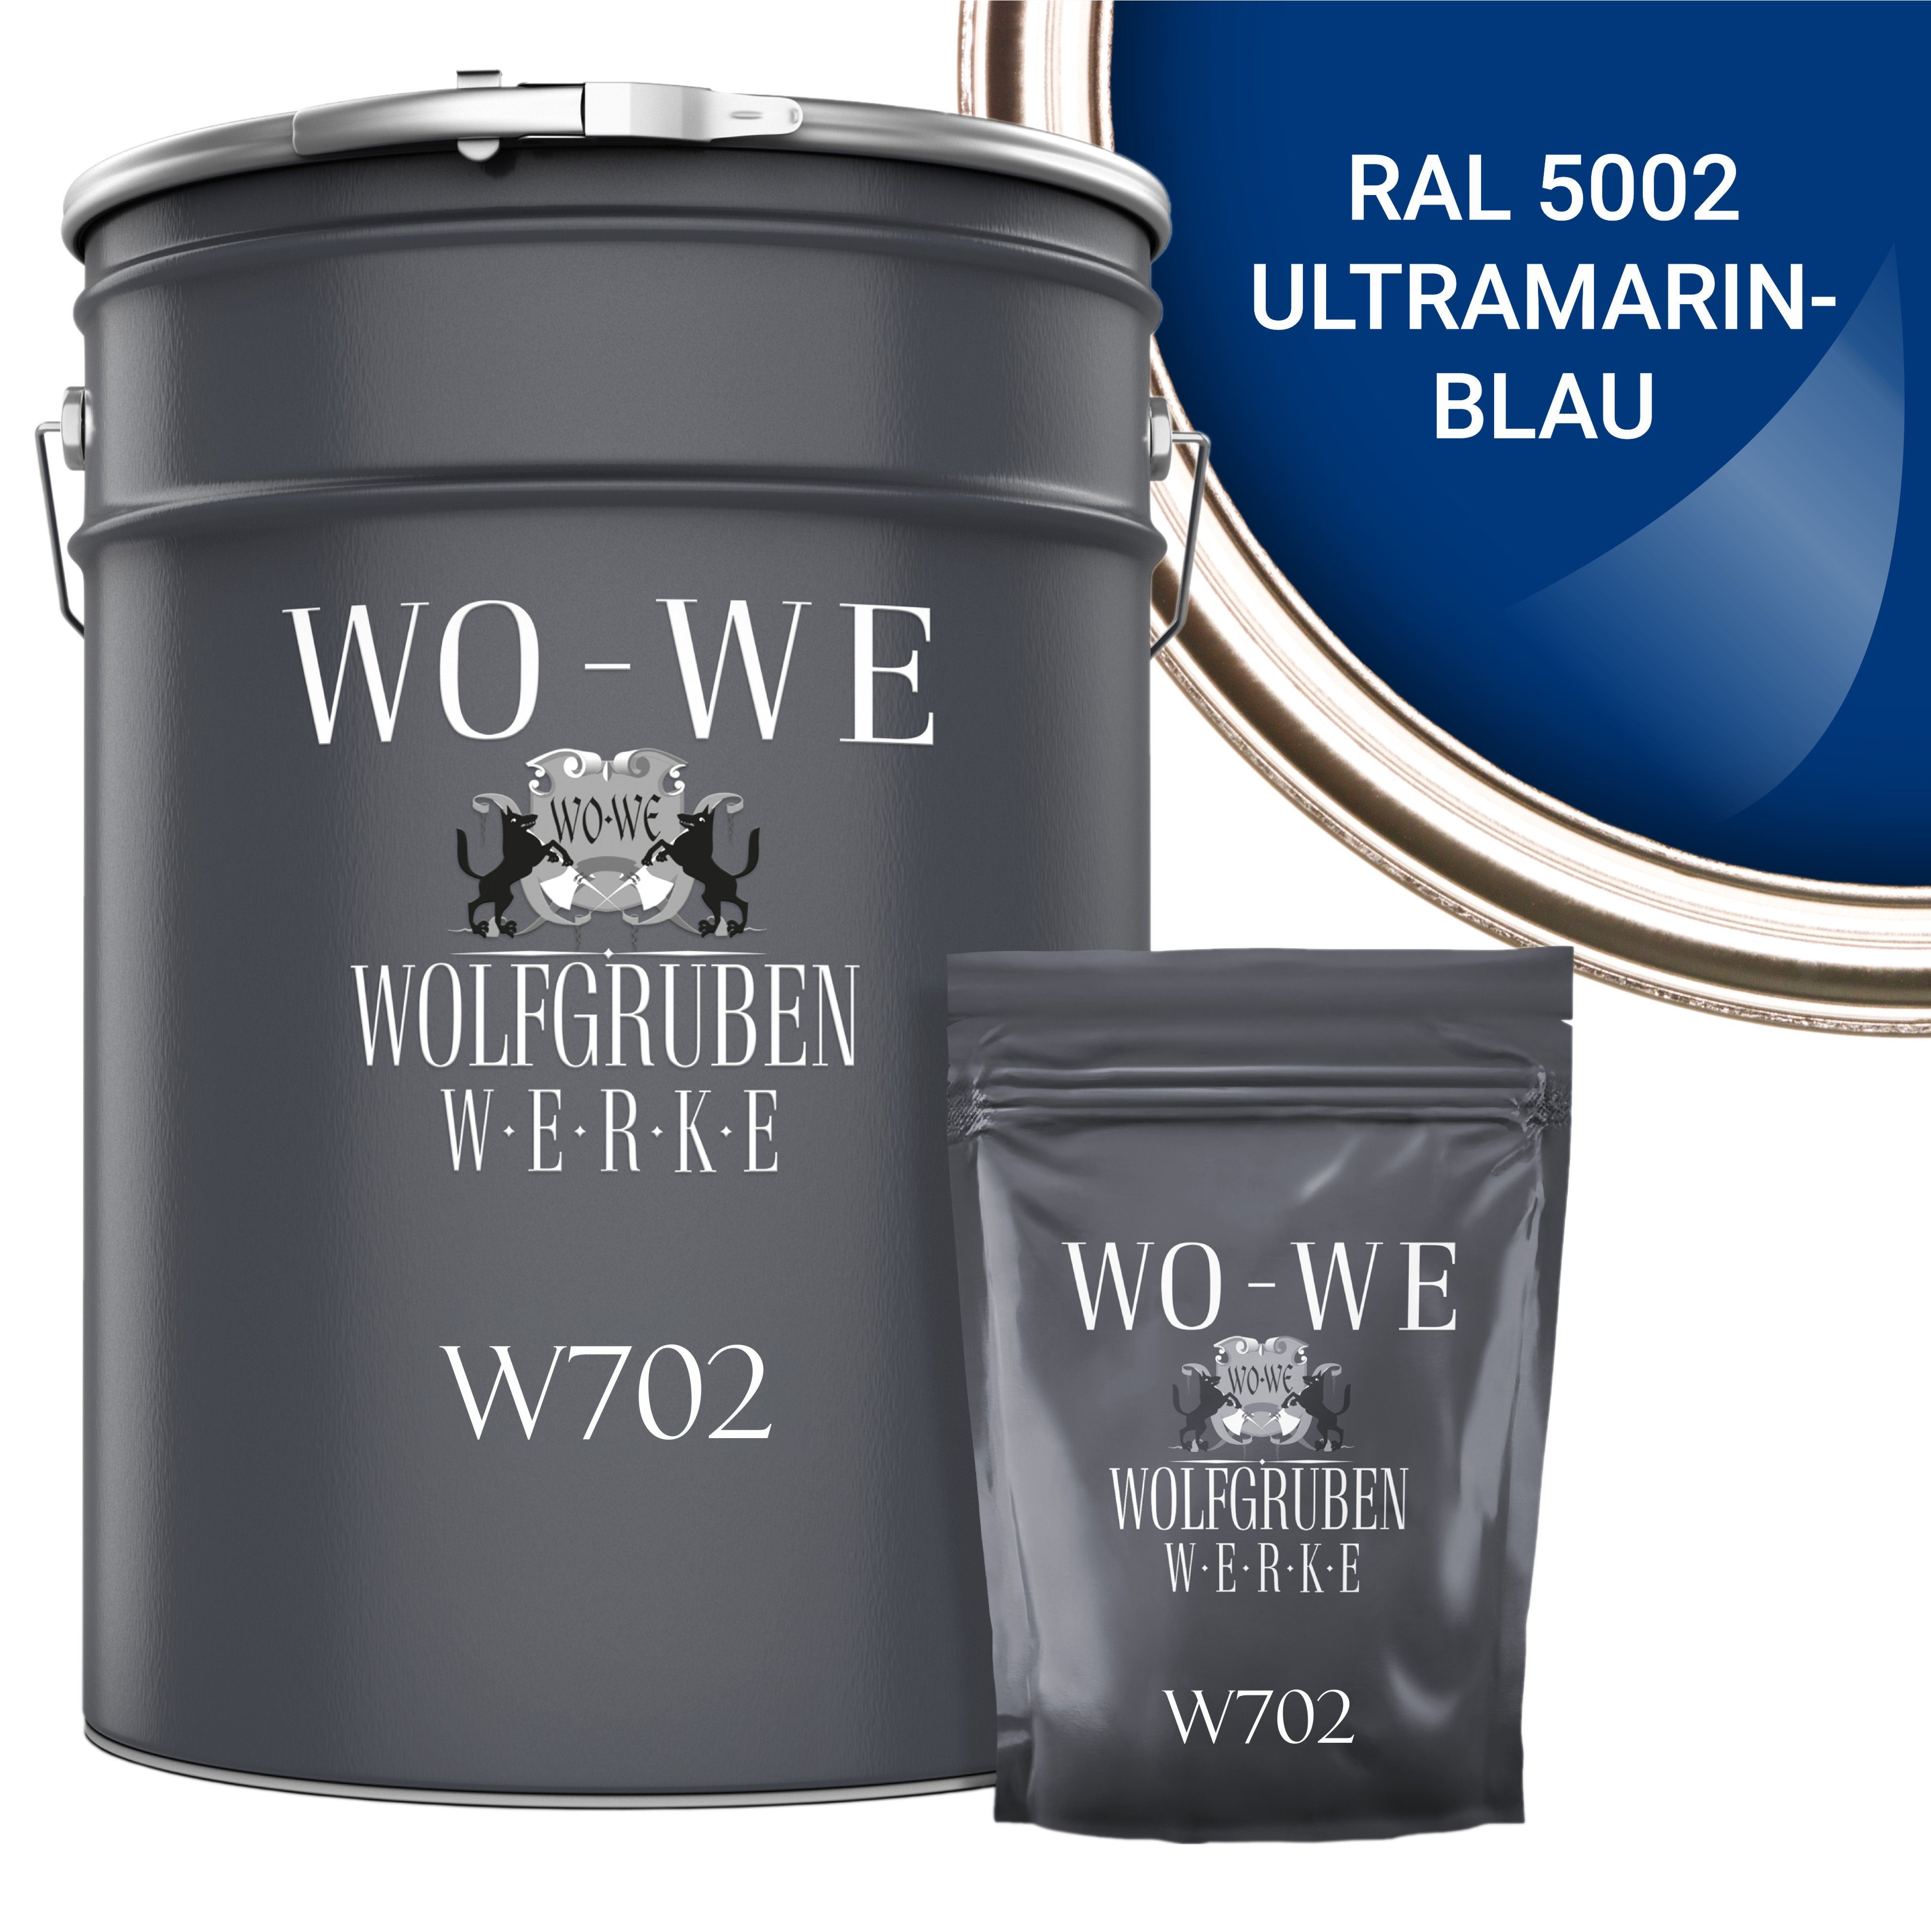 WO-WE Bodenversiegelung 2K Garagenfarbe Bodenbeschichtung W702, 2,5-20Kg, Seidenglänzend, Epoxidharz RAL 5002 Ultramarinblau